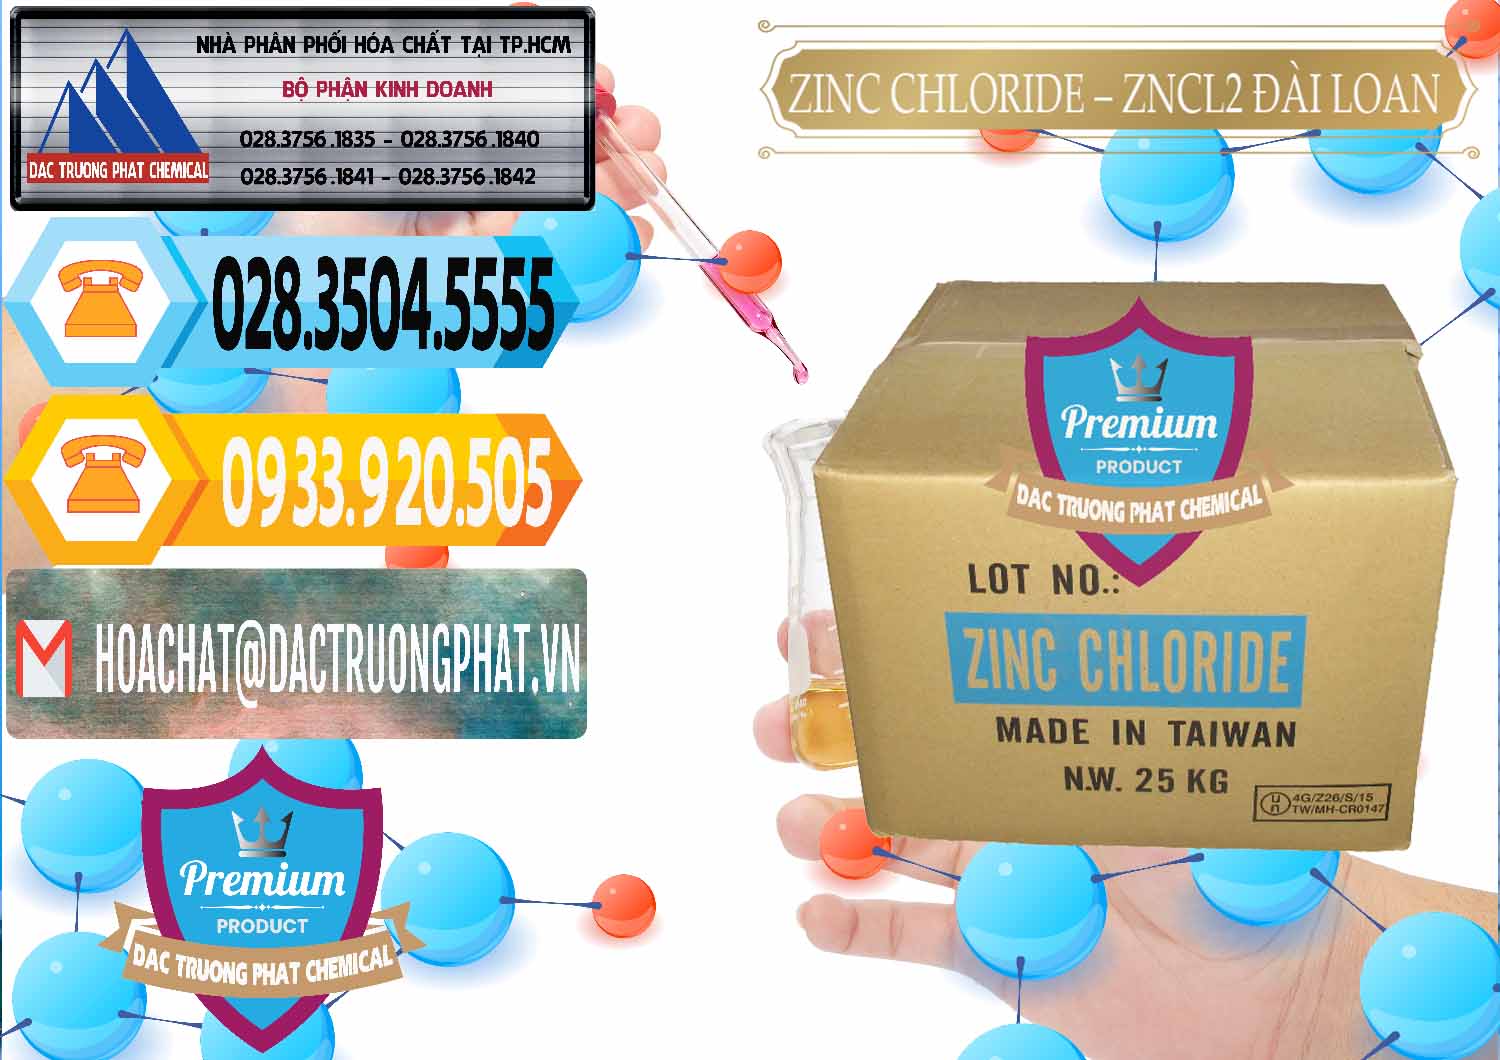 Công ty kinh doanh - bán Zinc Chloride - ZNCL2 96% Đài Loan Taiwan - 0178 - Cty chuyên phân phối và bán hóa chất tại TP.HCM - hoachattayrua.net